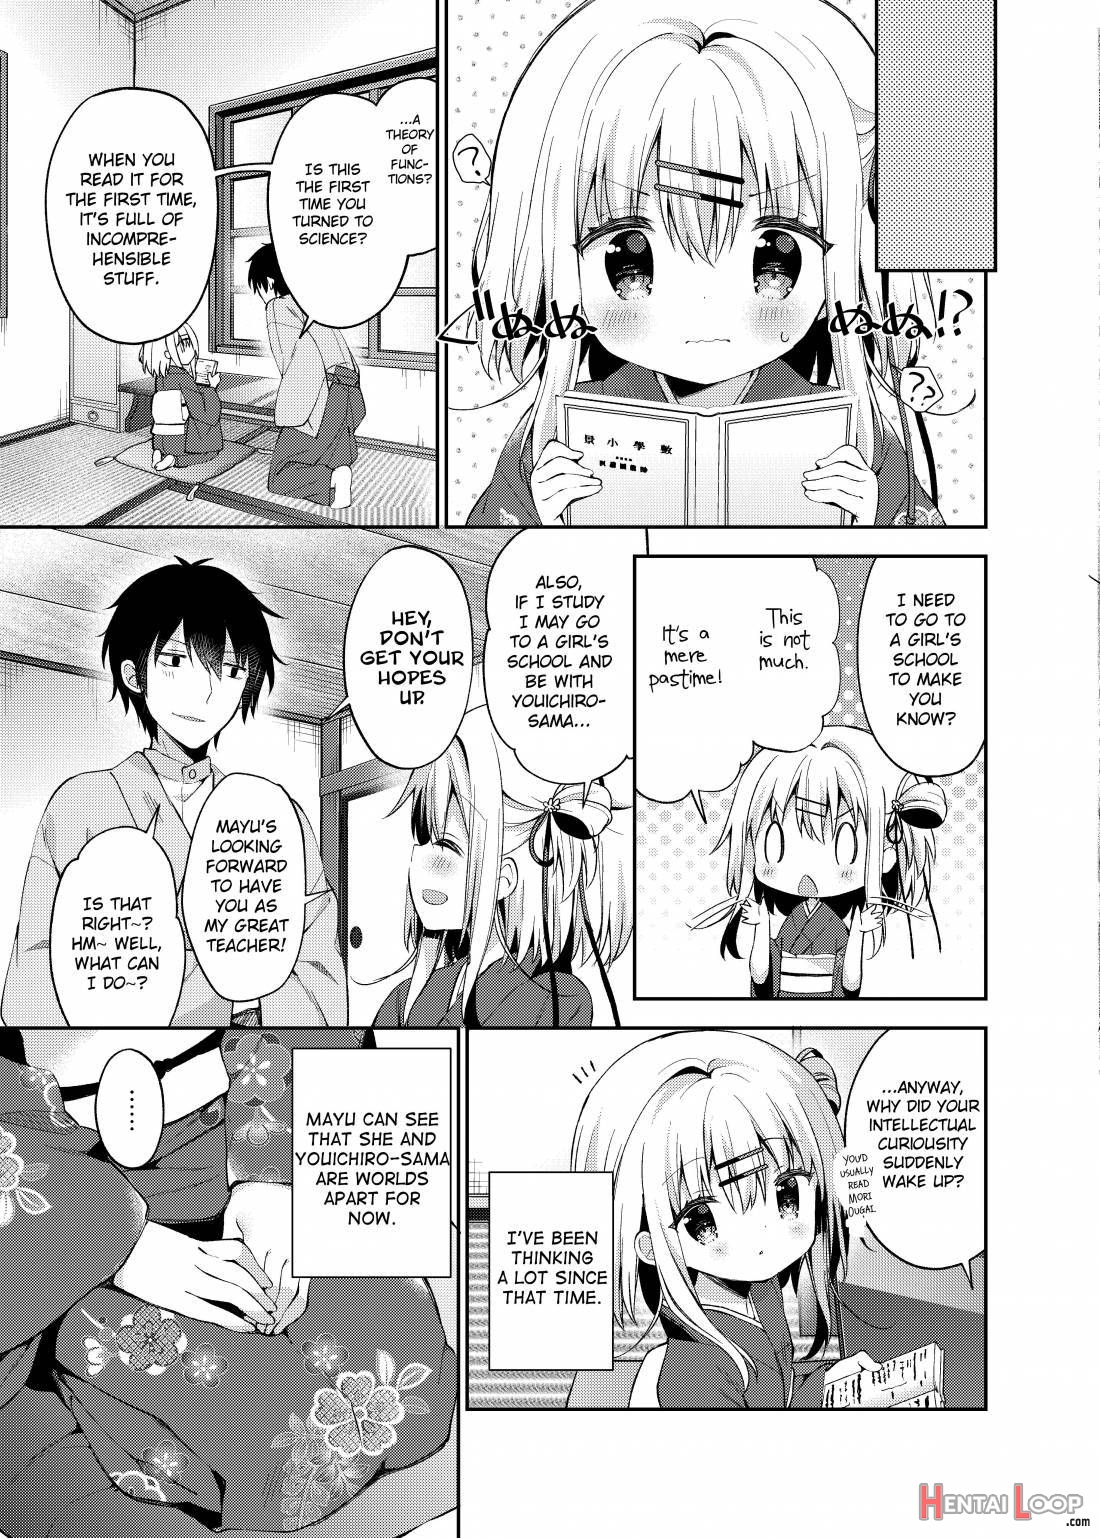 Onnanoko no Mayu 3 -Vita Sexualis- page 24